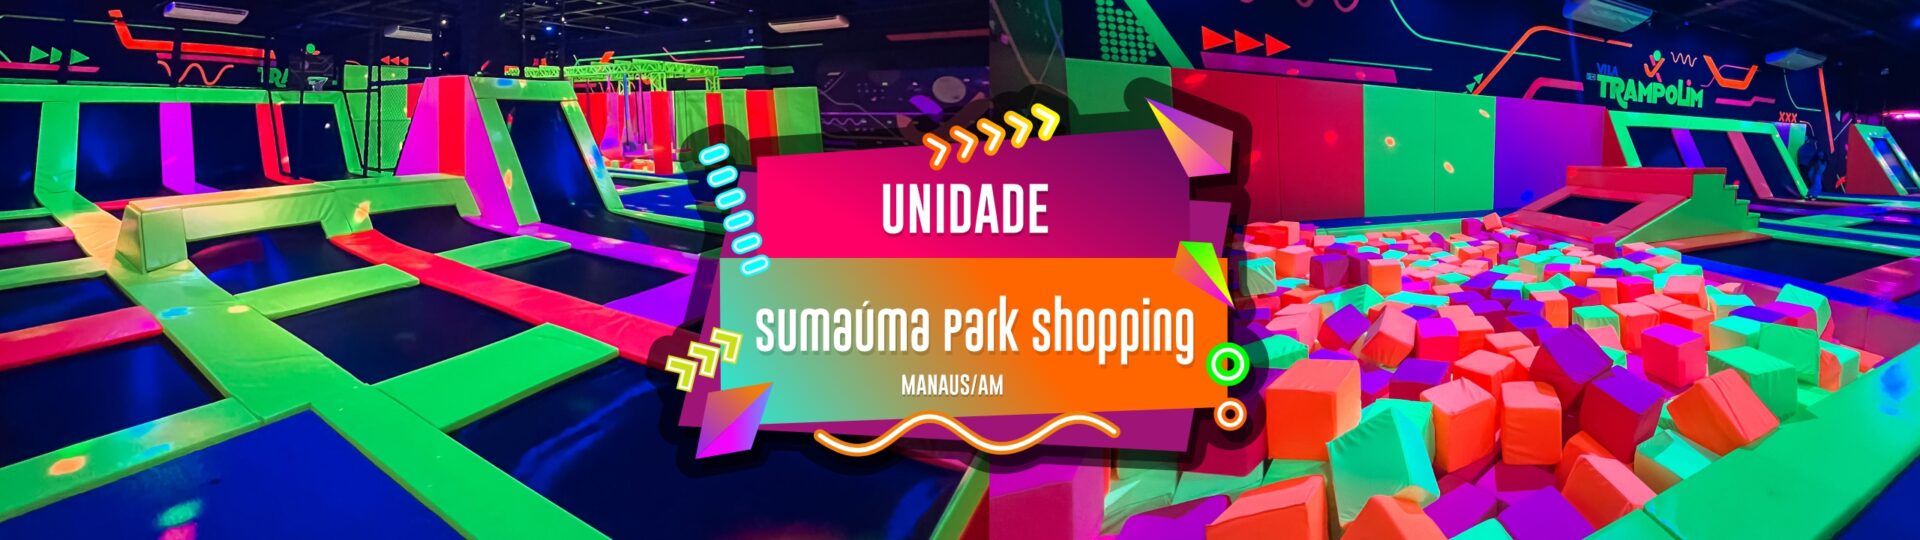 banner Sumauma Park Shopping 03